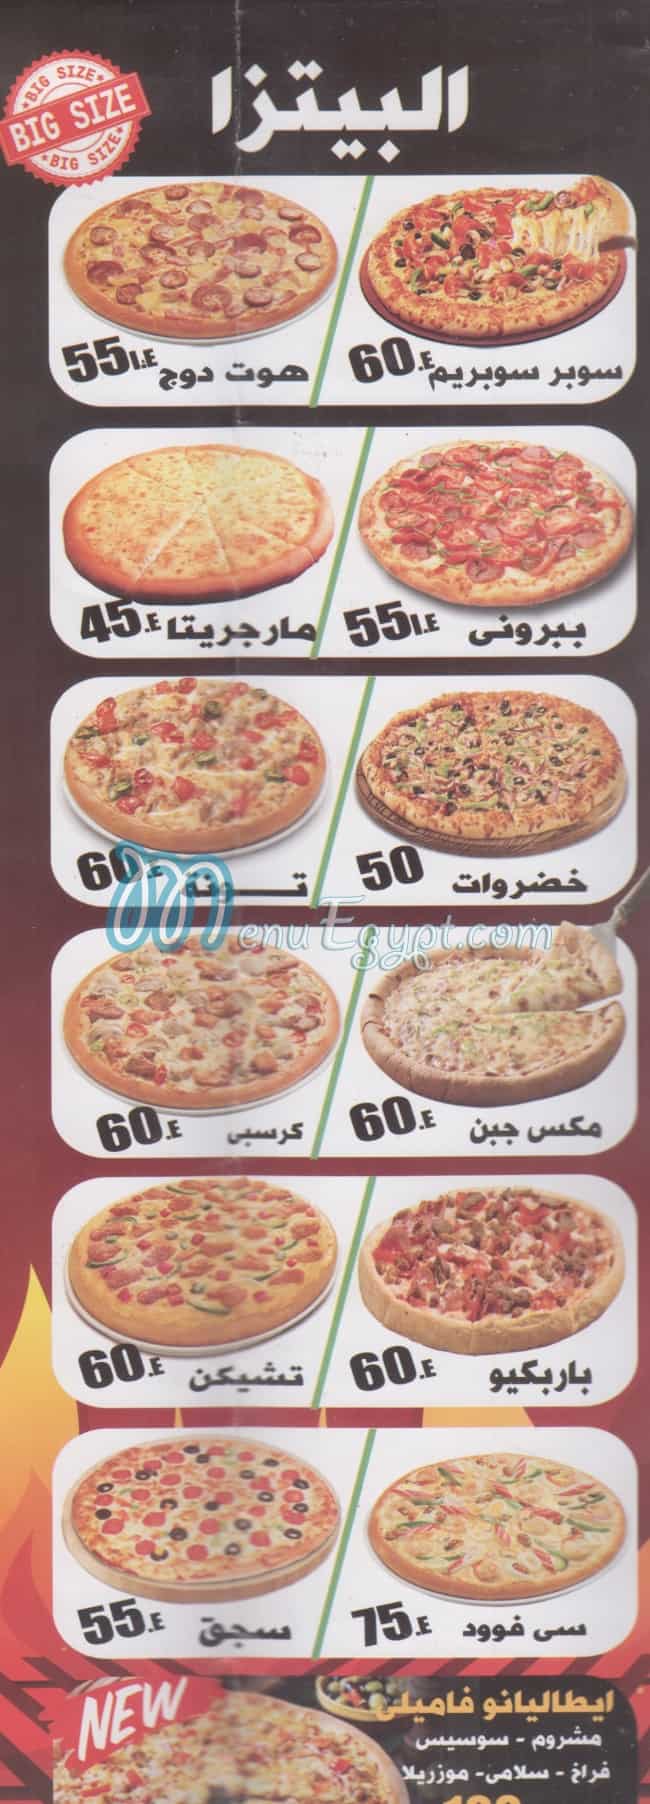 Italiano pizza egypt